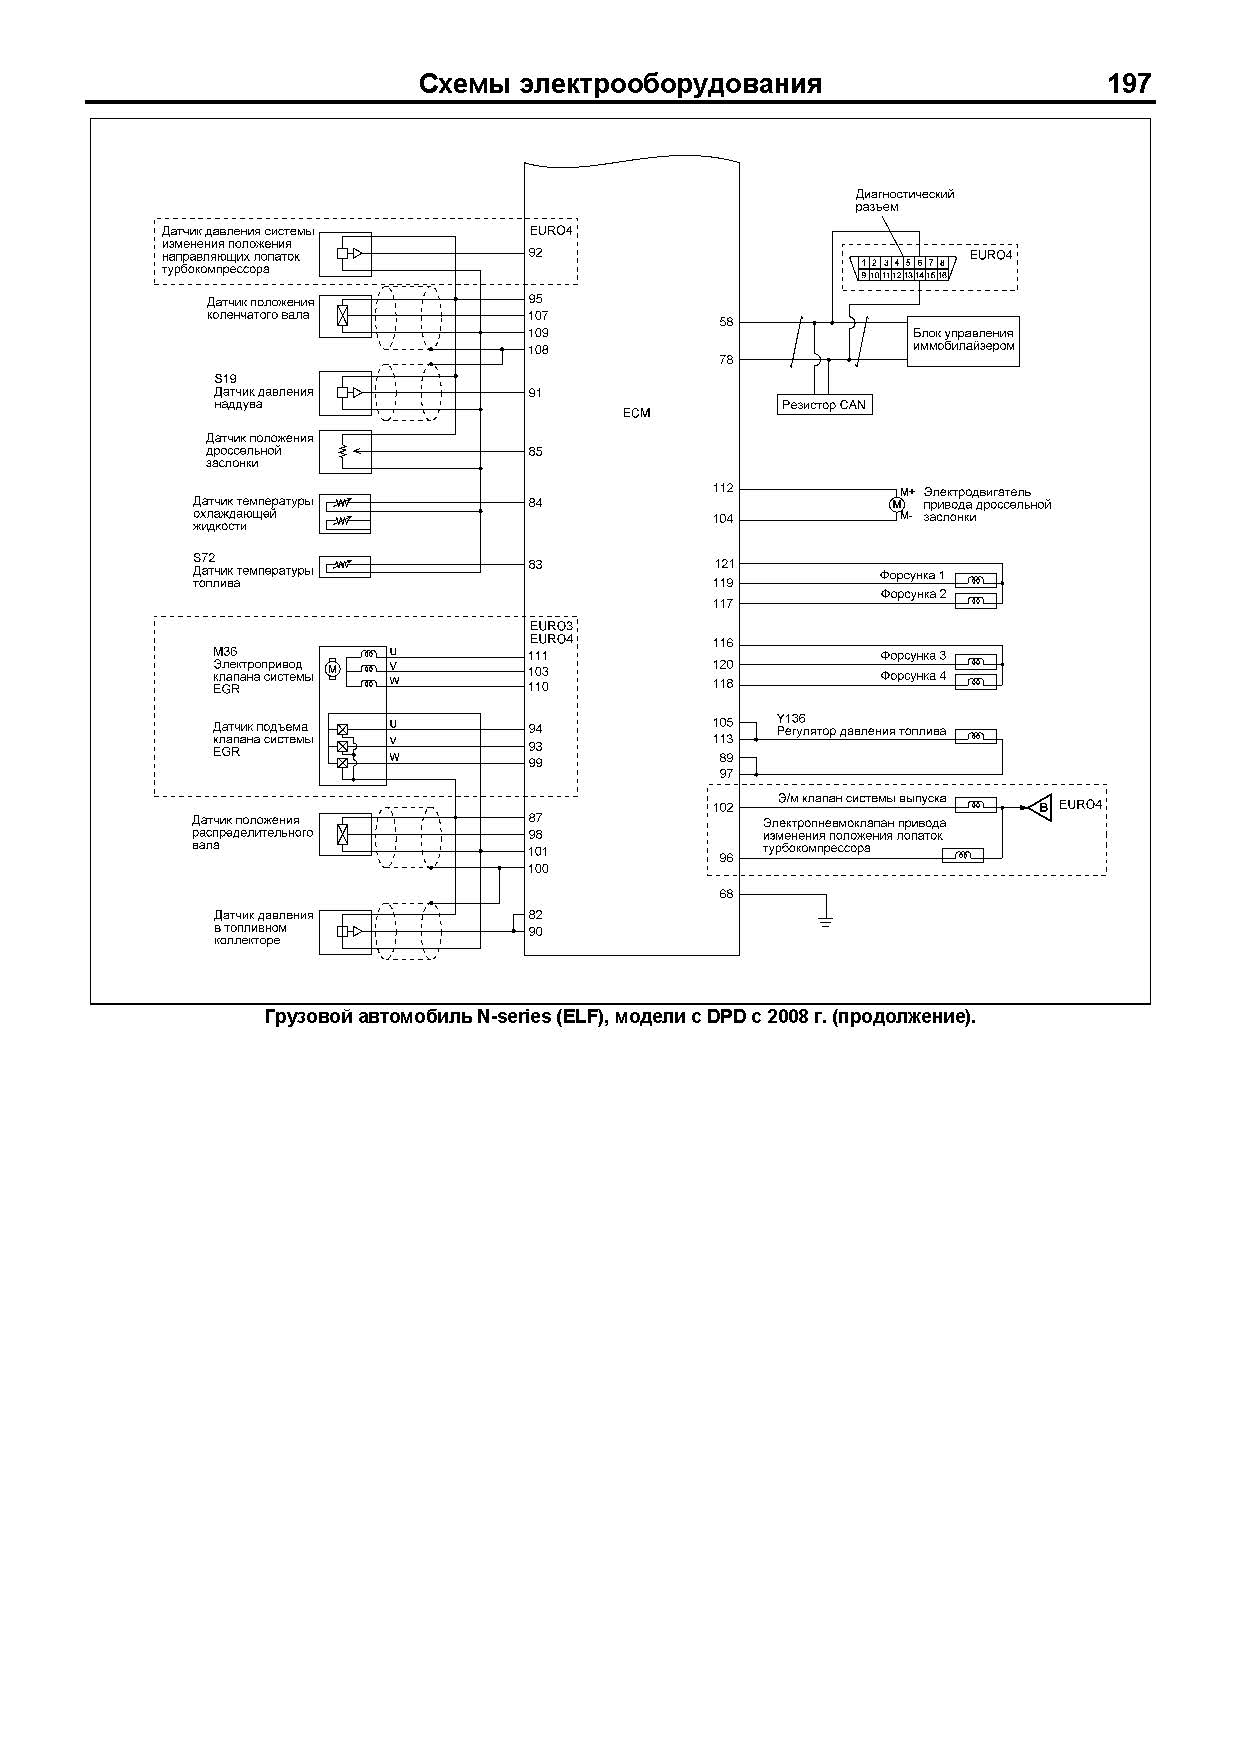 Книга: Двигатели ISUZU 4JK1 / 4JJ1 (д), рем., экспл., то, сер.ПРОФ. | Легион-Aвтодата